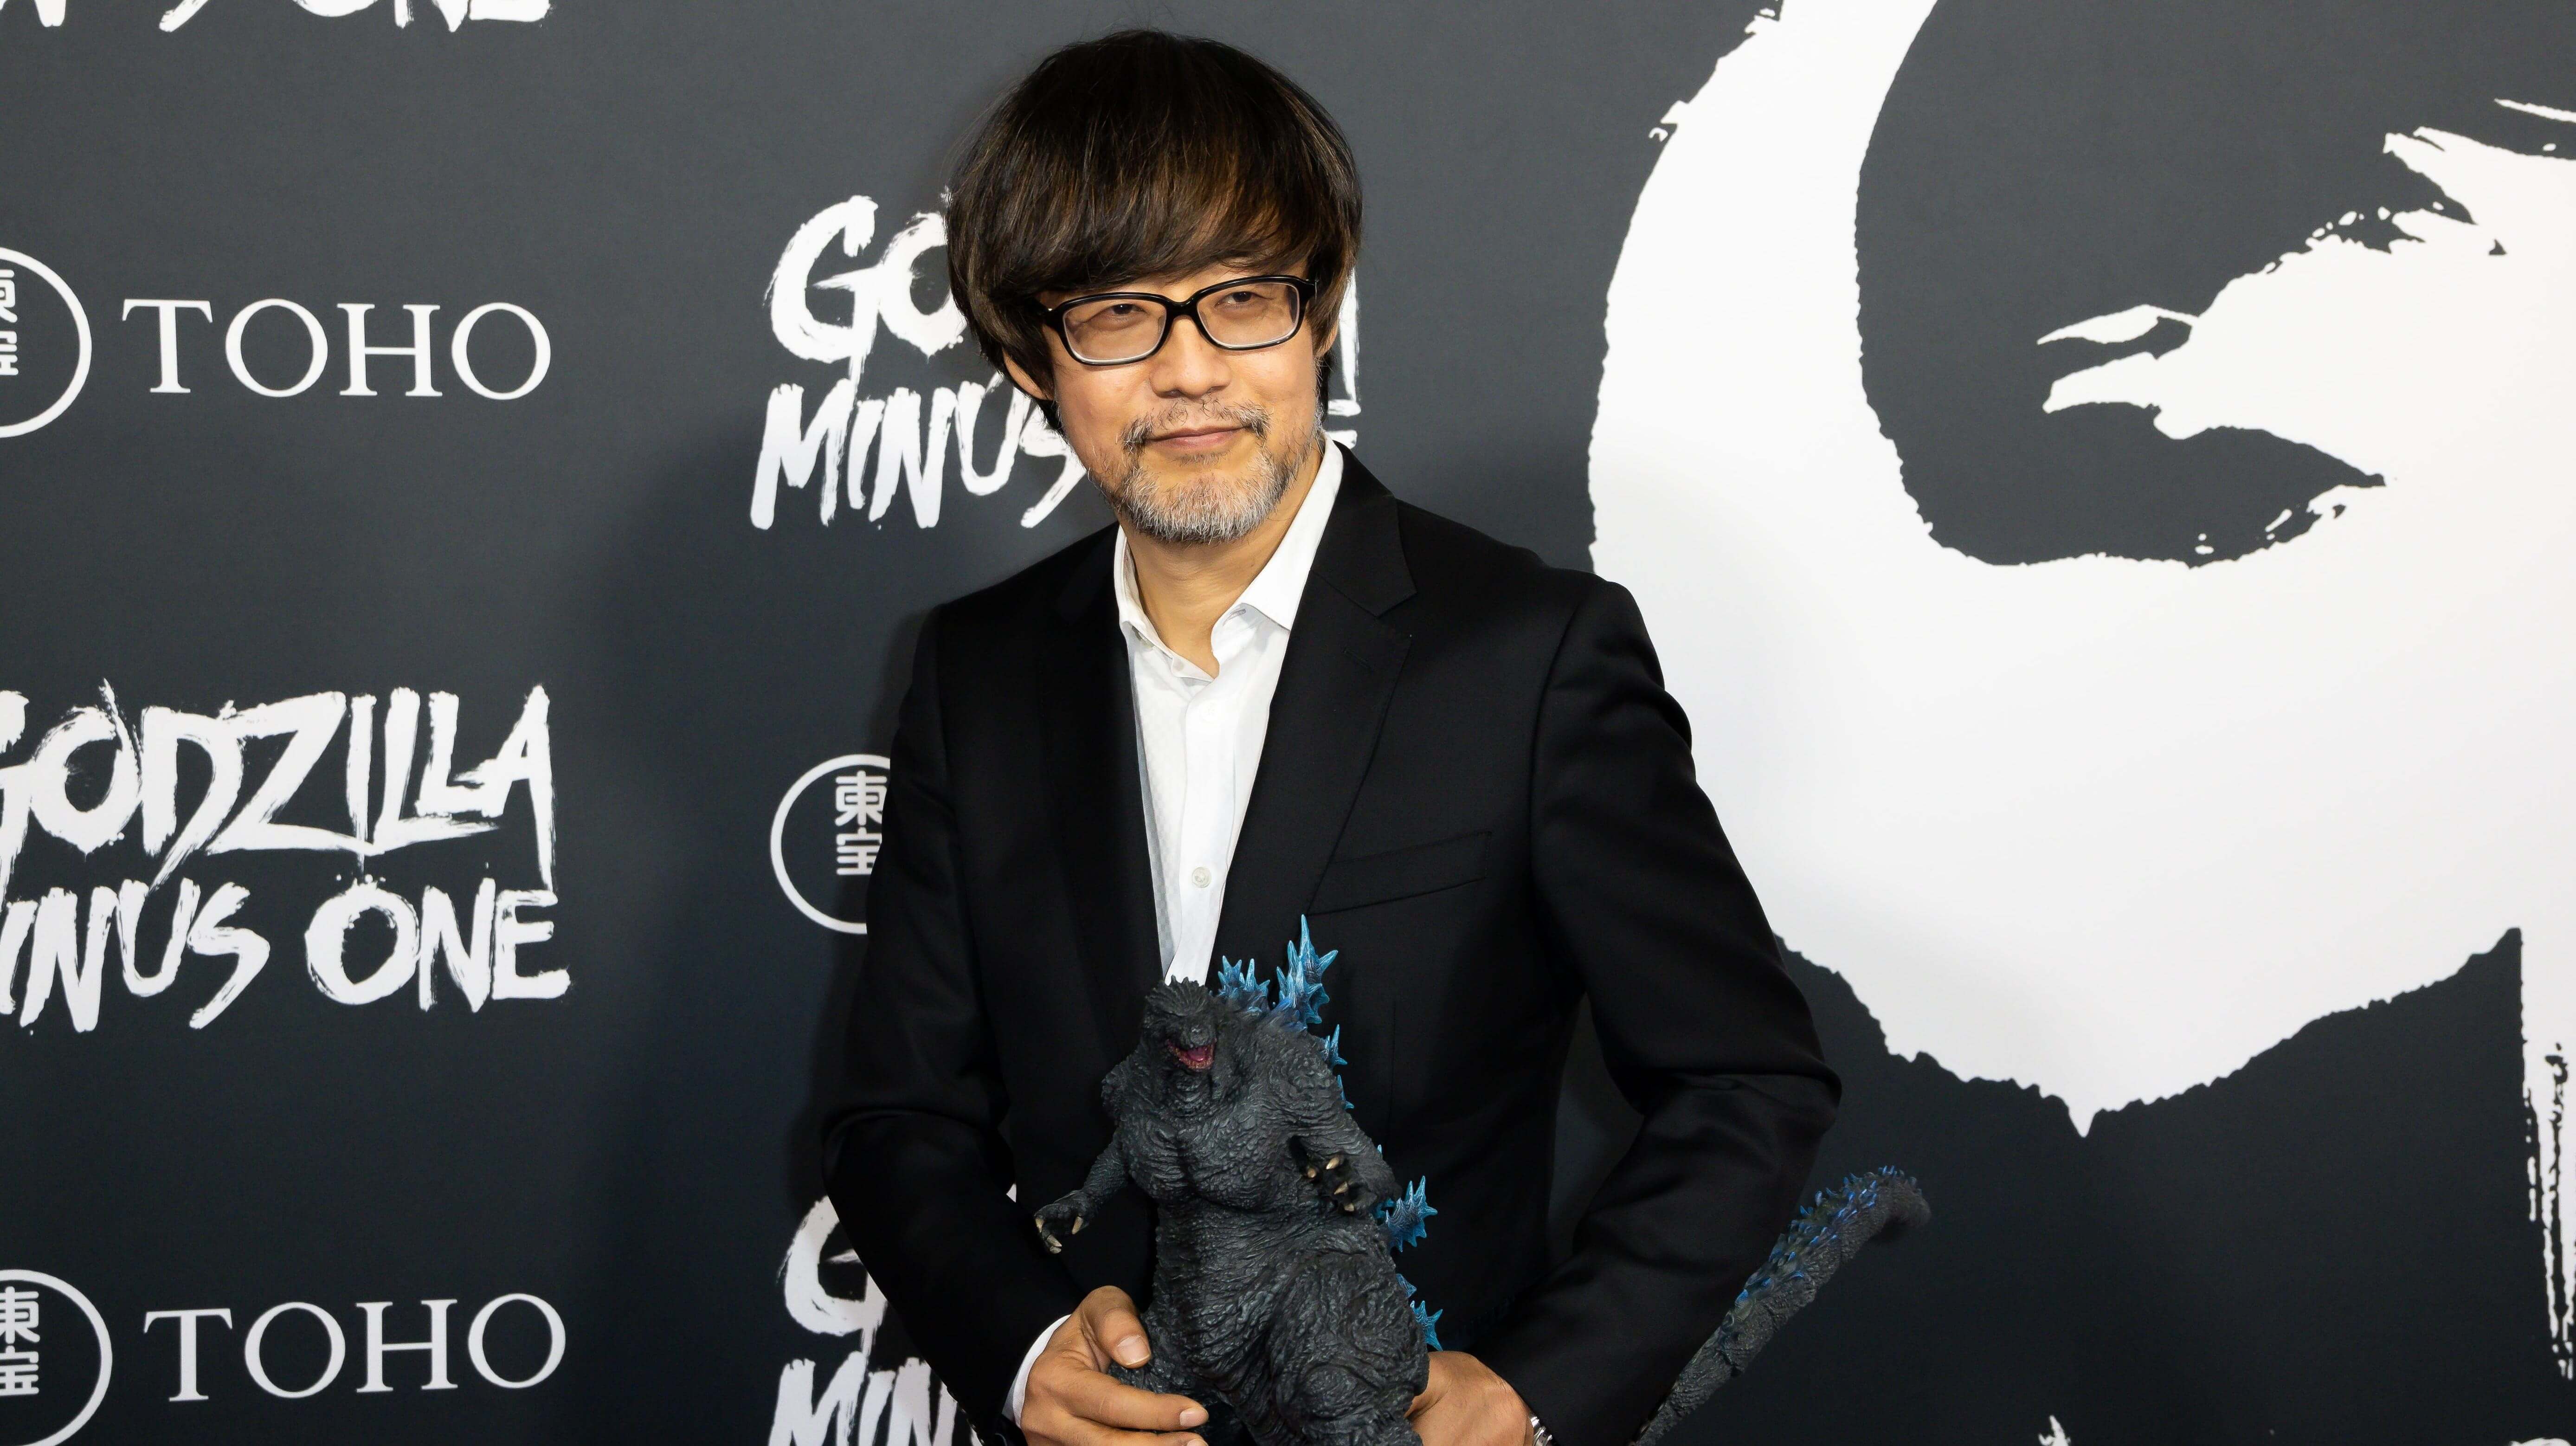 Godzilla Minus One crushed everybody at the Japanese Academy Awards